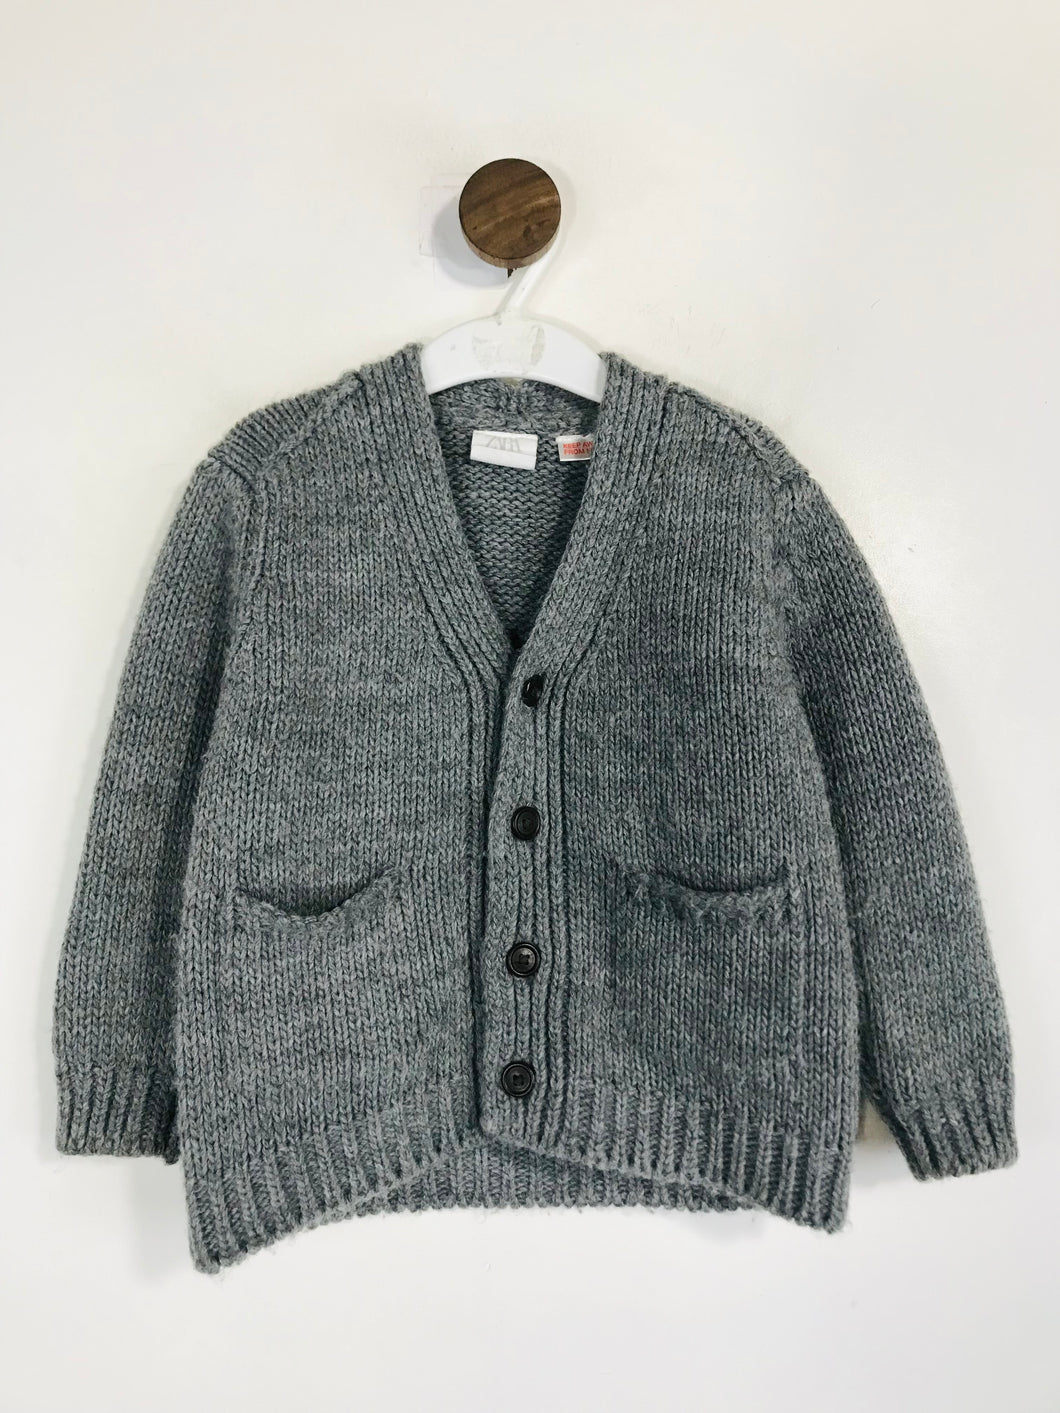 Zara Kid's Knit Cardigan | 2-3 Years | Grey